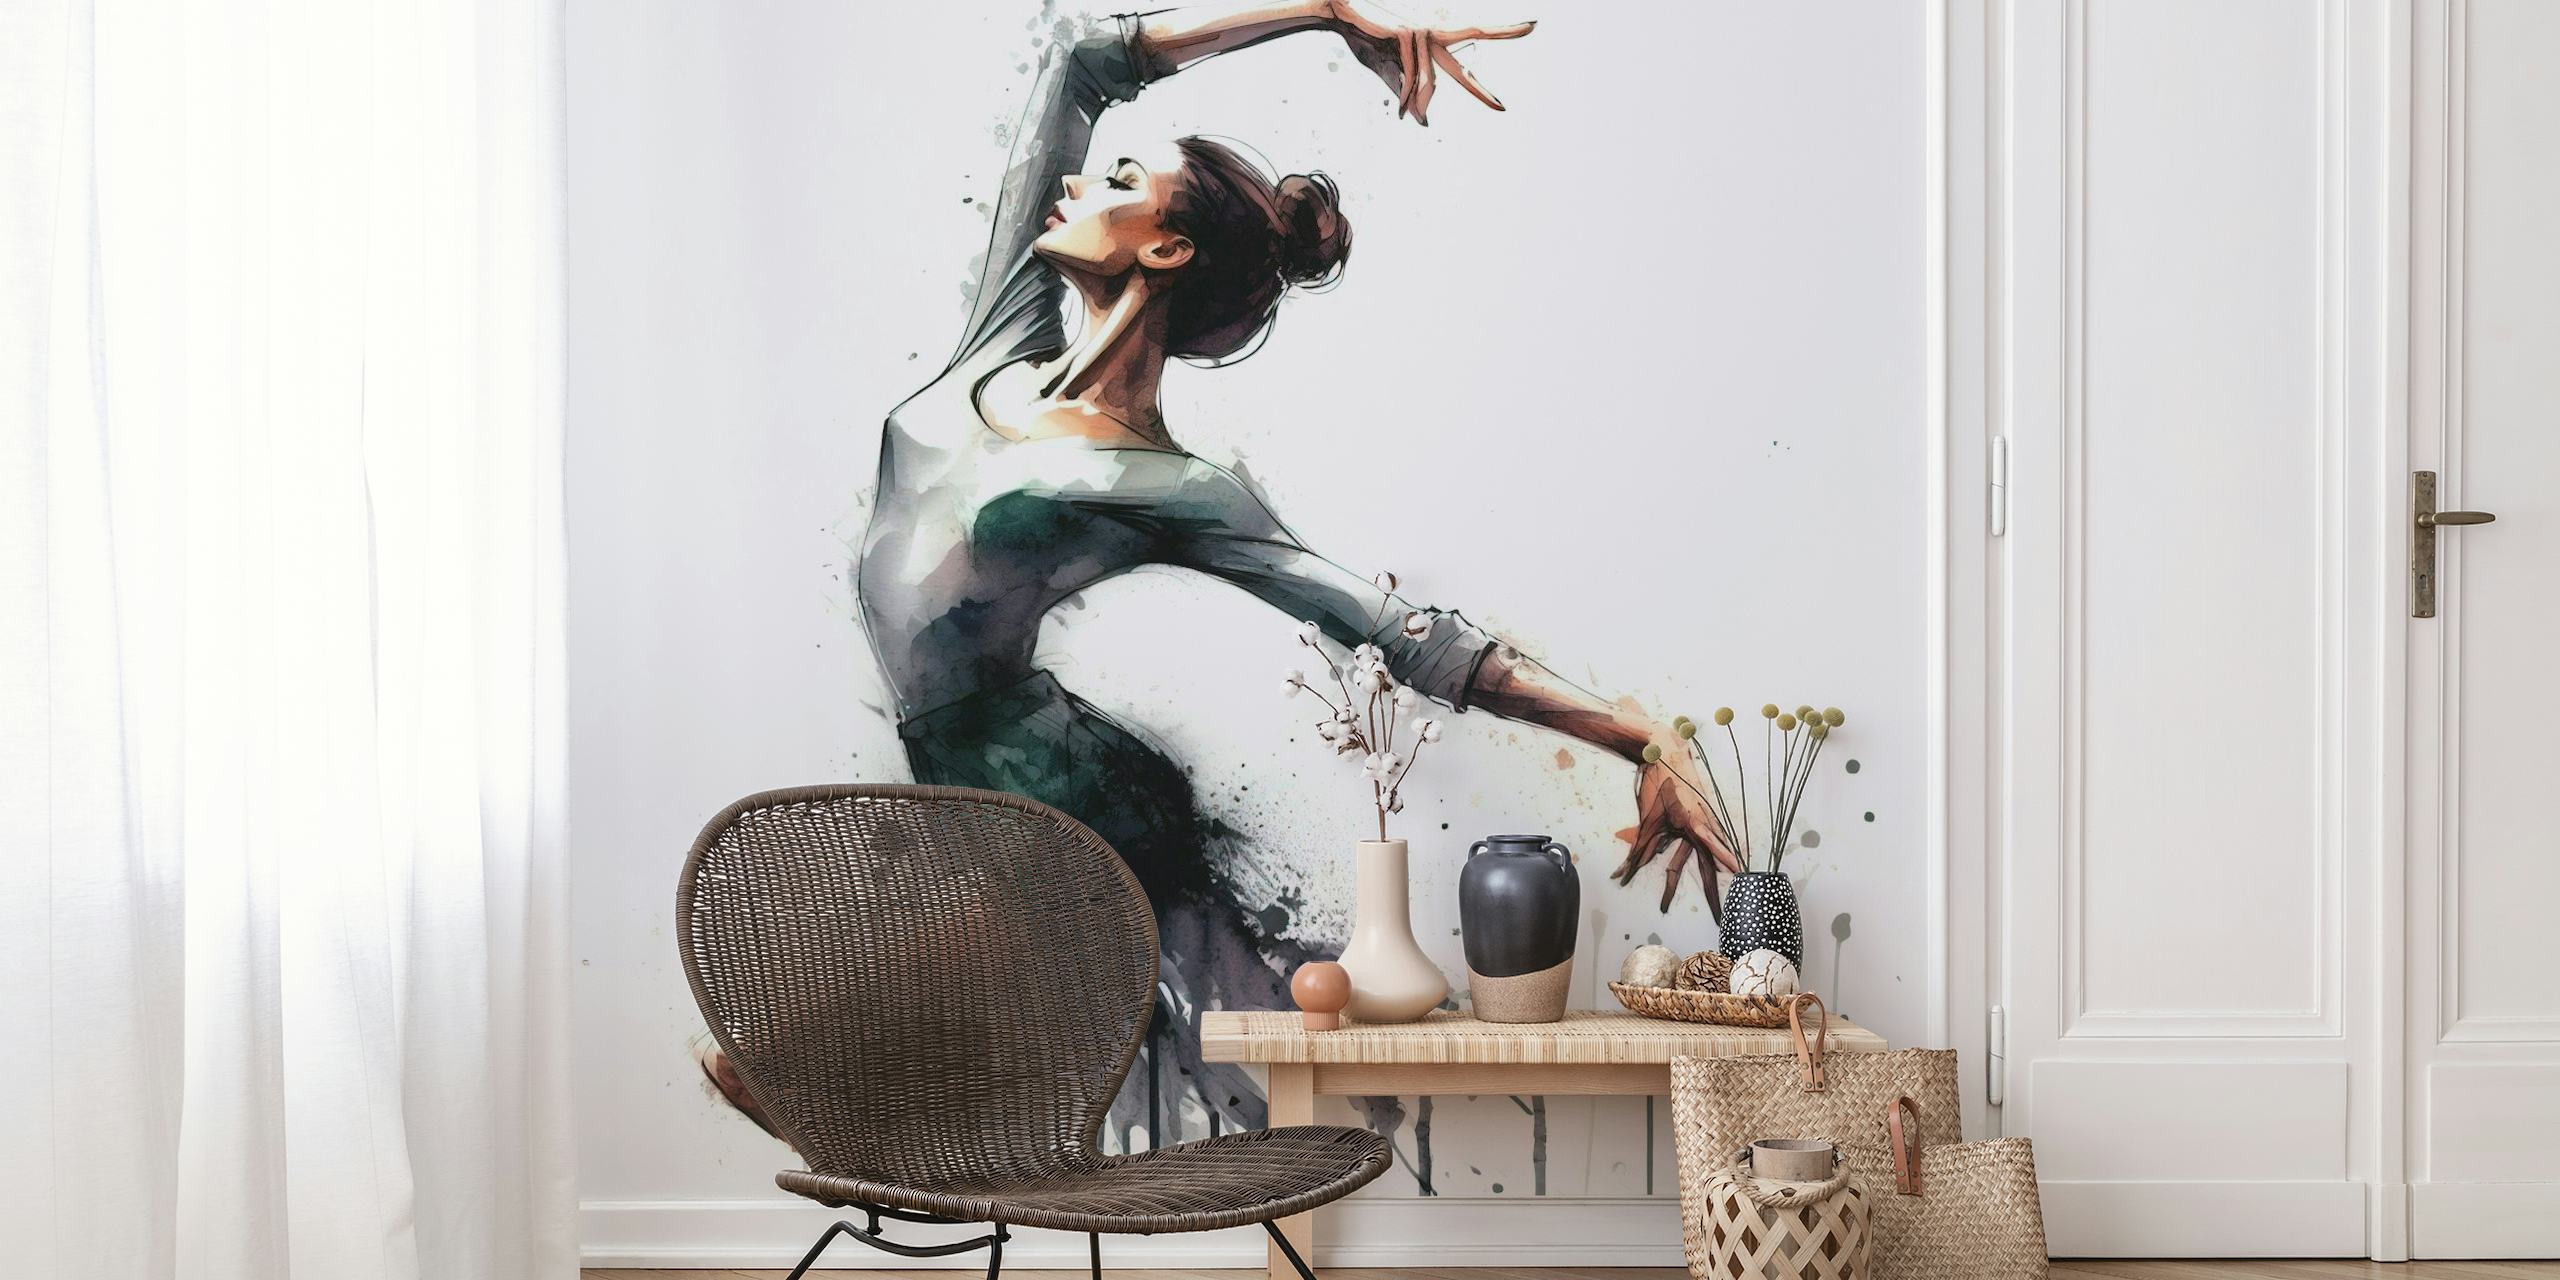 Kunstnerisk akvarel vægmaleri af en balletdanser i bevægelse